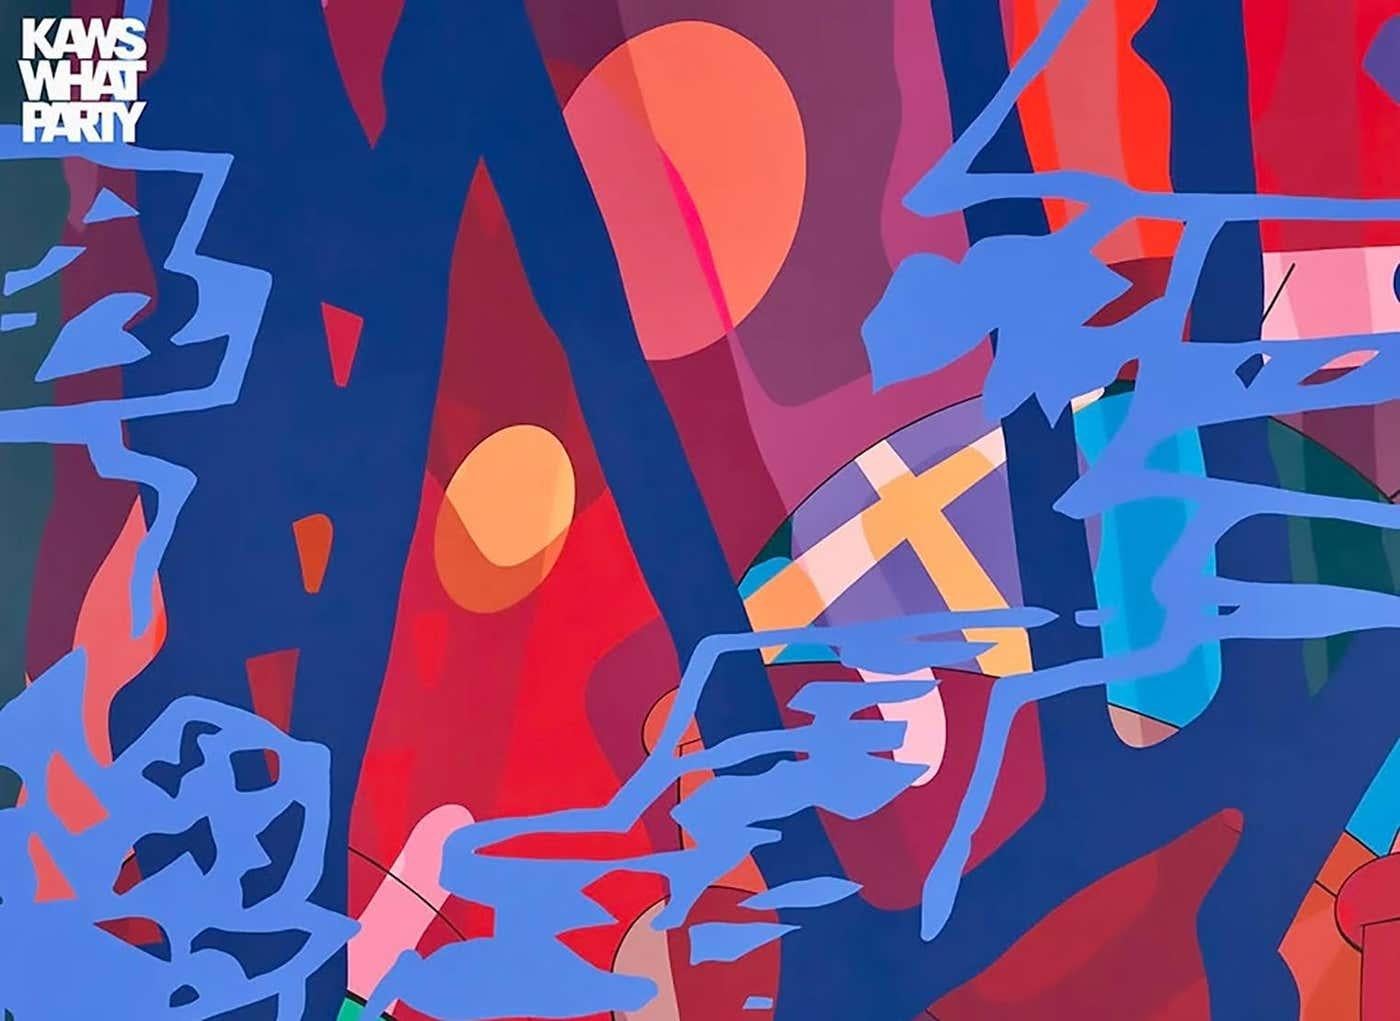 KAWS 'Score Years' Poster 2021:
Dieses lebhafte KAWS-Plakat mit den charakteristischen abstrakten Motiven des Künstlers wurde anlässlich der viel beachteten KAWS-Ausstellung 2021 veröffentlicht: What Party Ausstellung im Brooklyn Museum